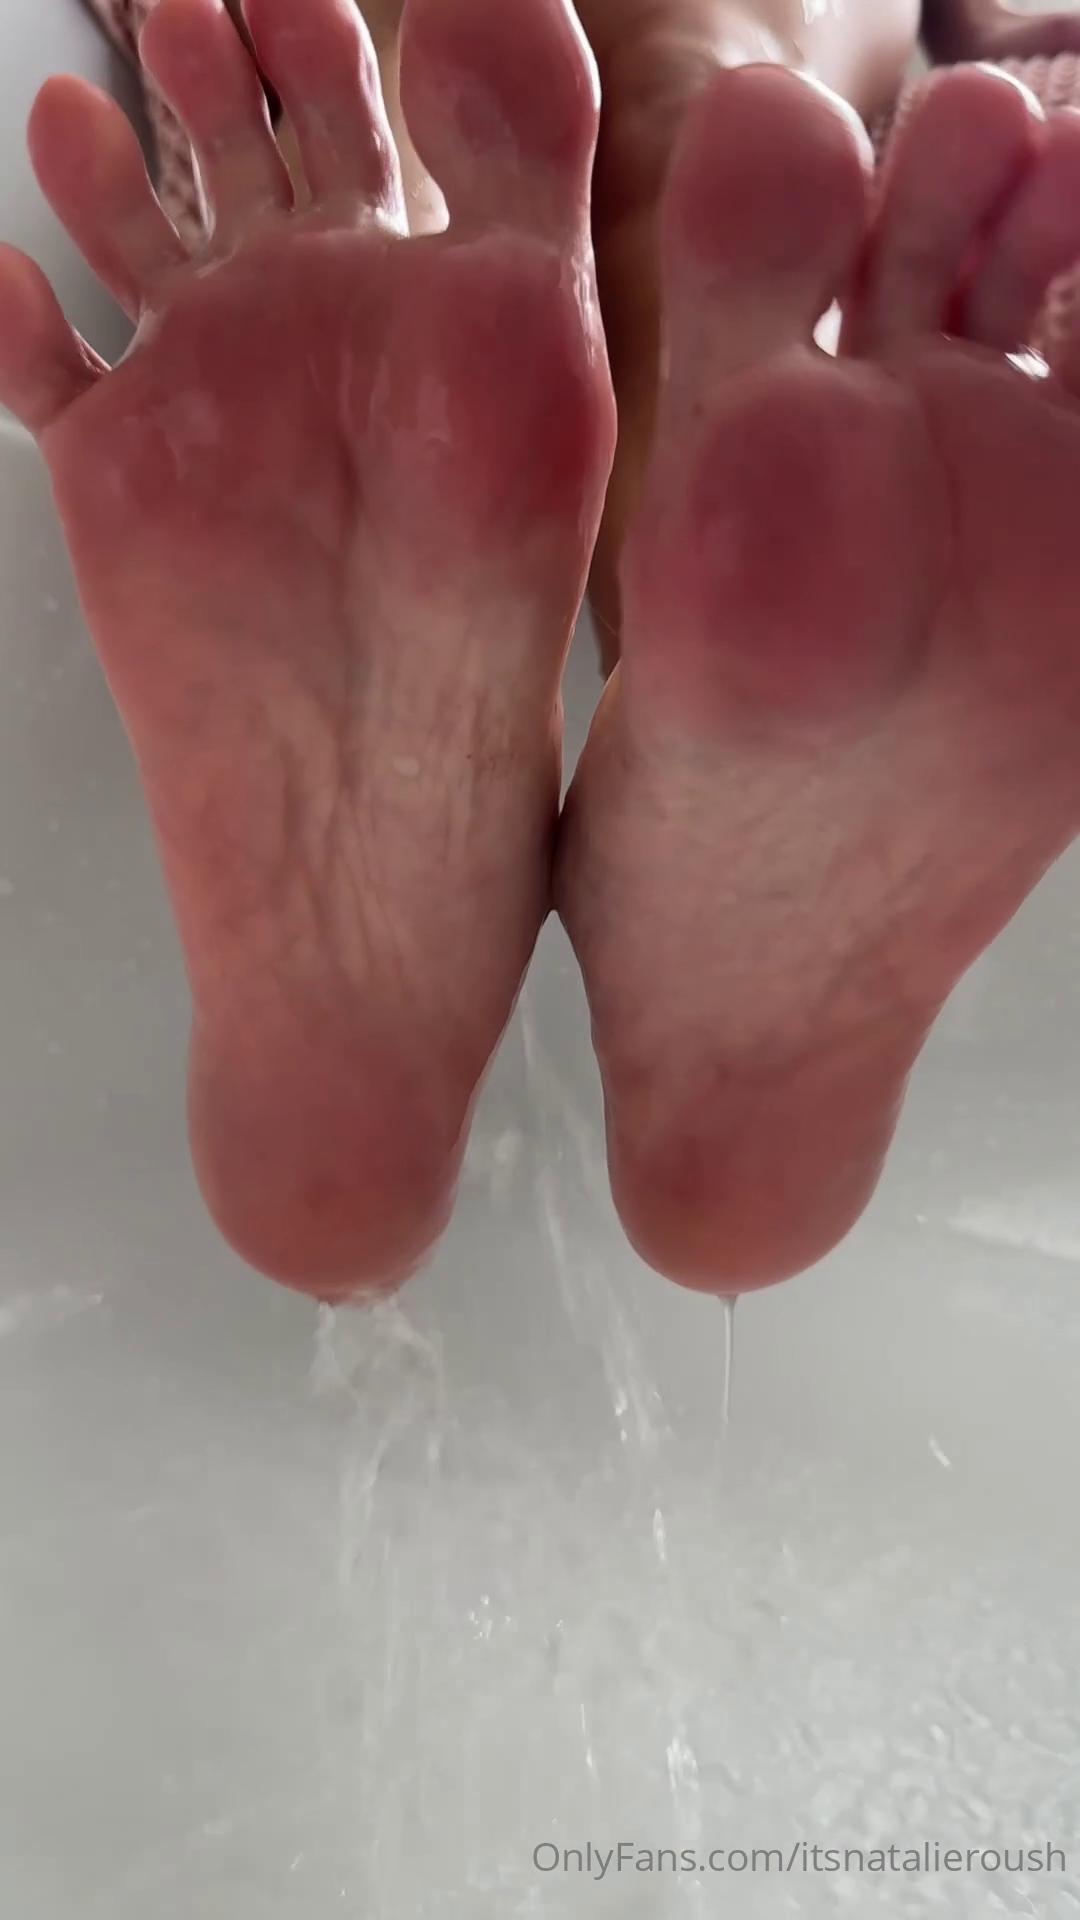 Natalie Roush Wet Feet Cleaning PPV Onlyfans Video Leaked –.jpg